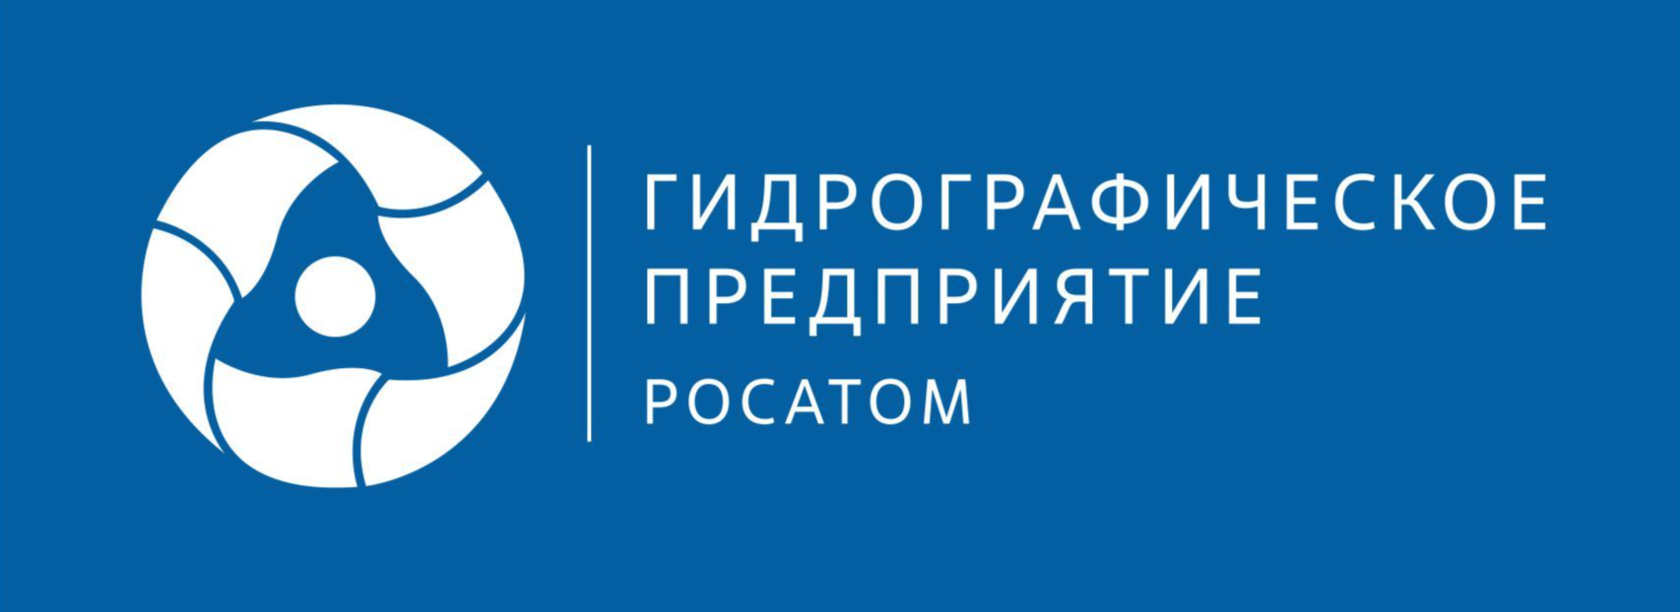 Логотип росатома на прозрачном фоне фото